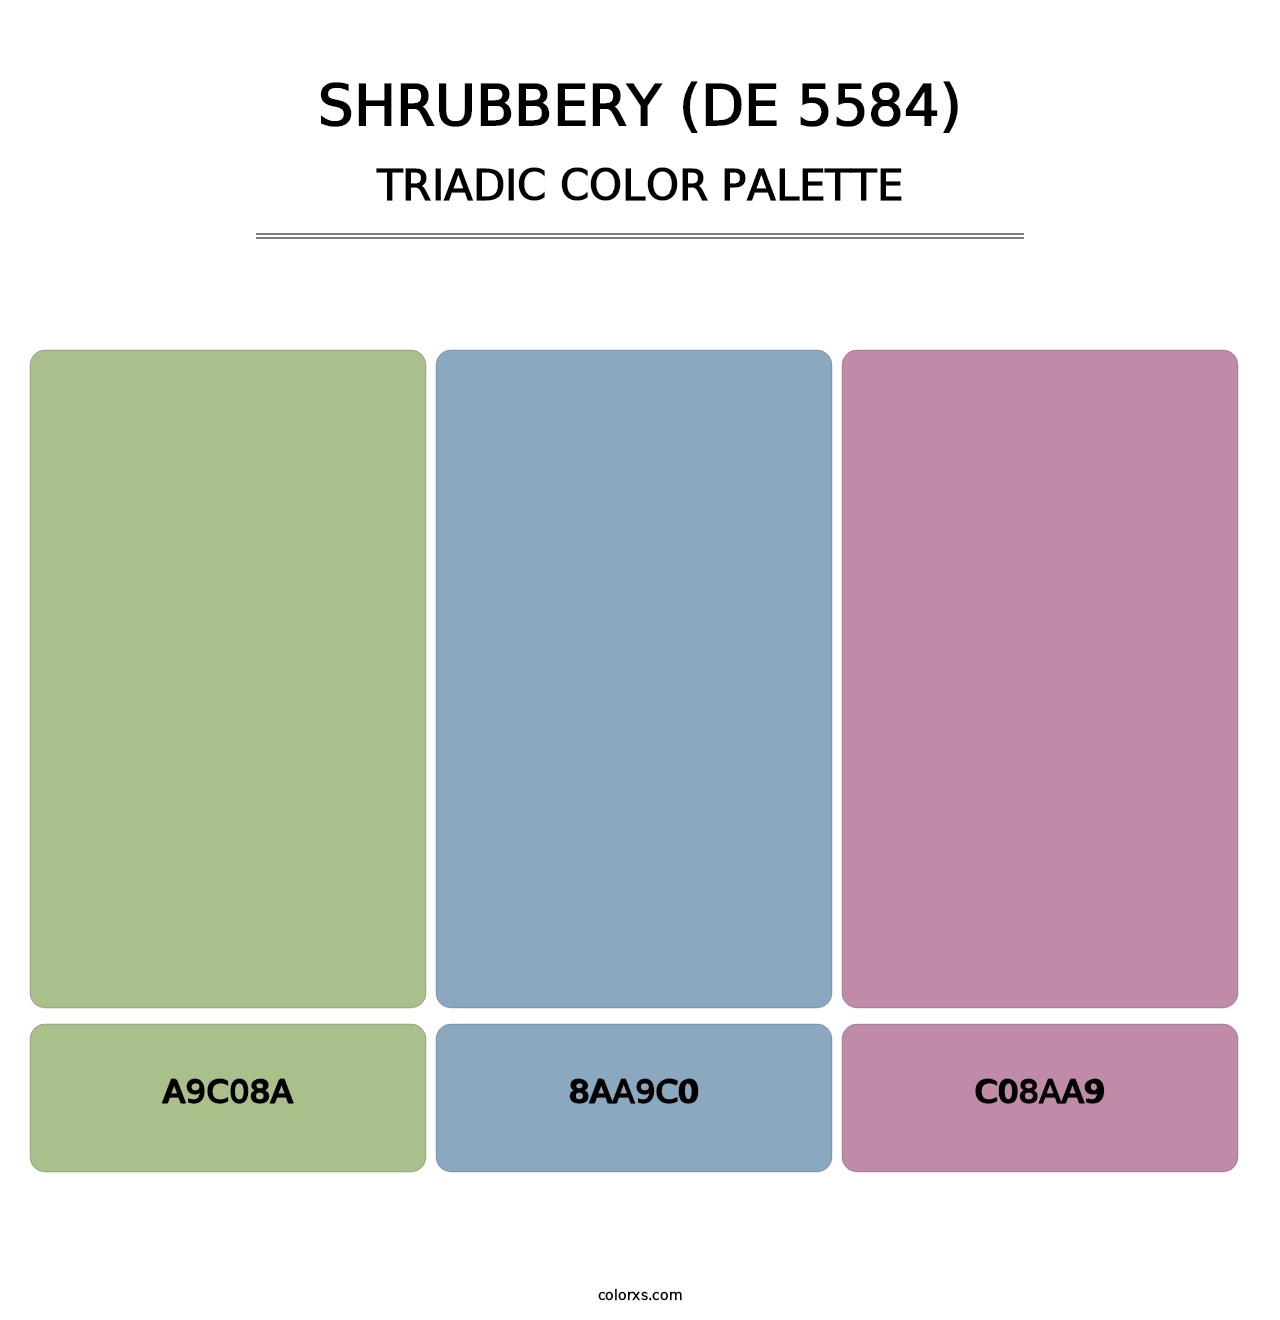 Shrubbery (DE 5584) - Triadic Color Palette